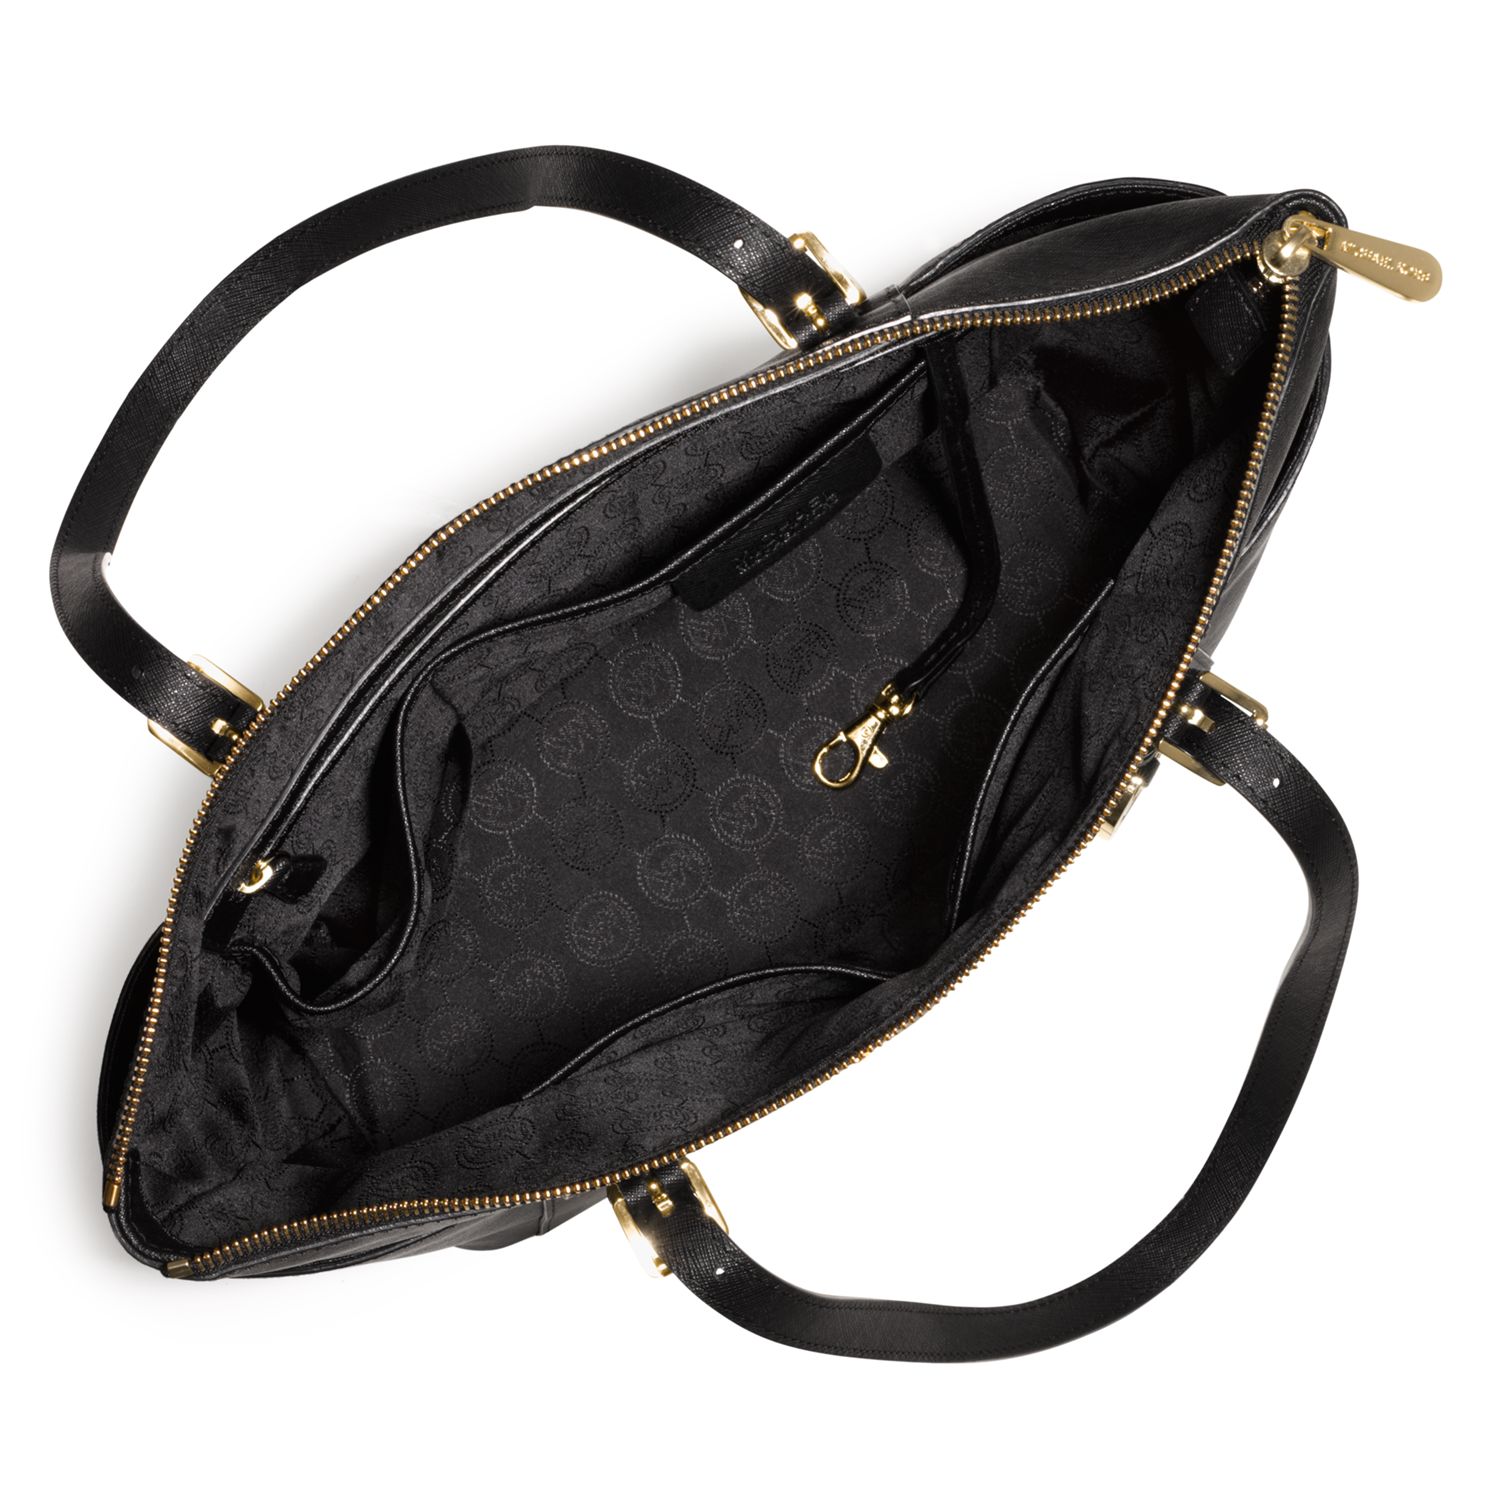 Michael Kors Jet Set Black Leather Small Shoulder Bag with Gold